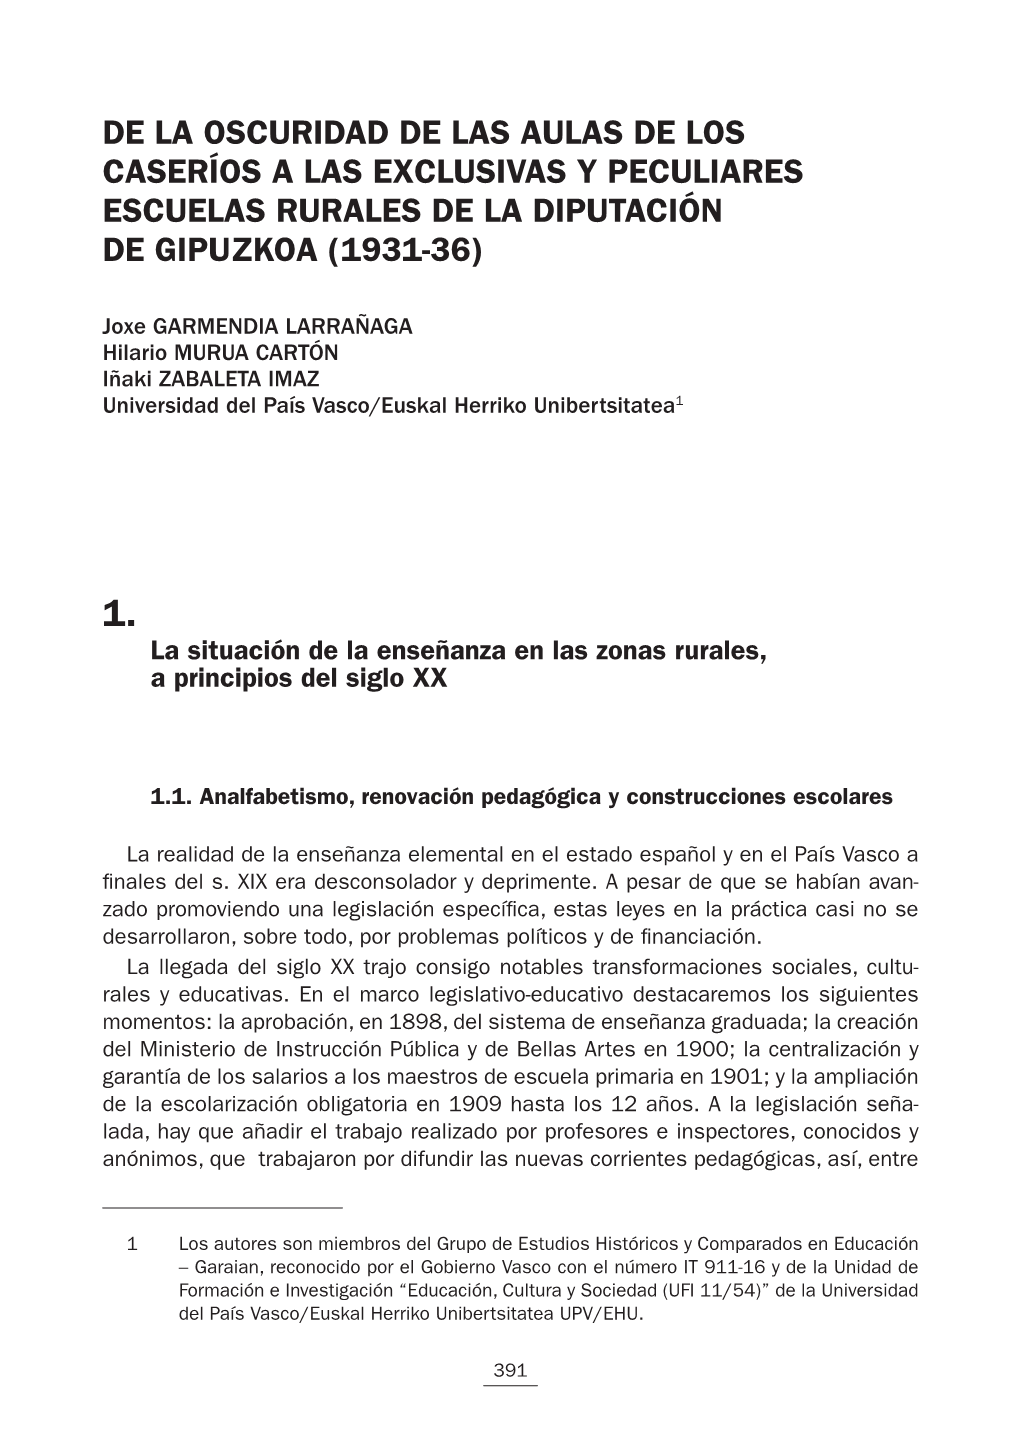 De La Oscuridad De Las Aulas De Los Caseríos a Las Exclusivas Y Peculiares Escuelas Rurales De La Diputación De Gipuzkoa (1931-36)